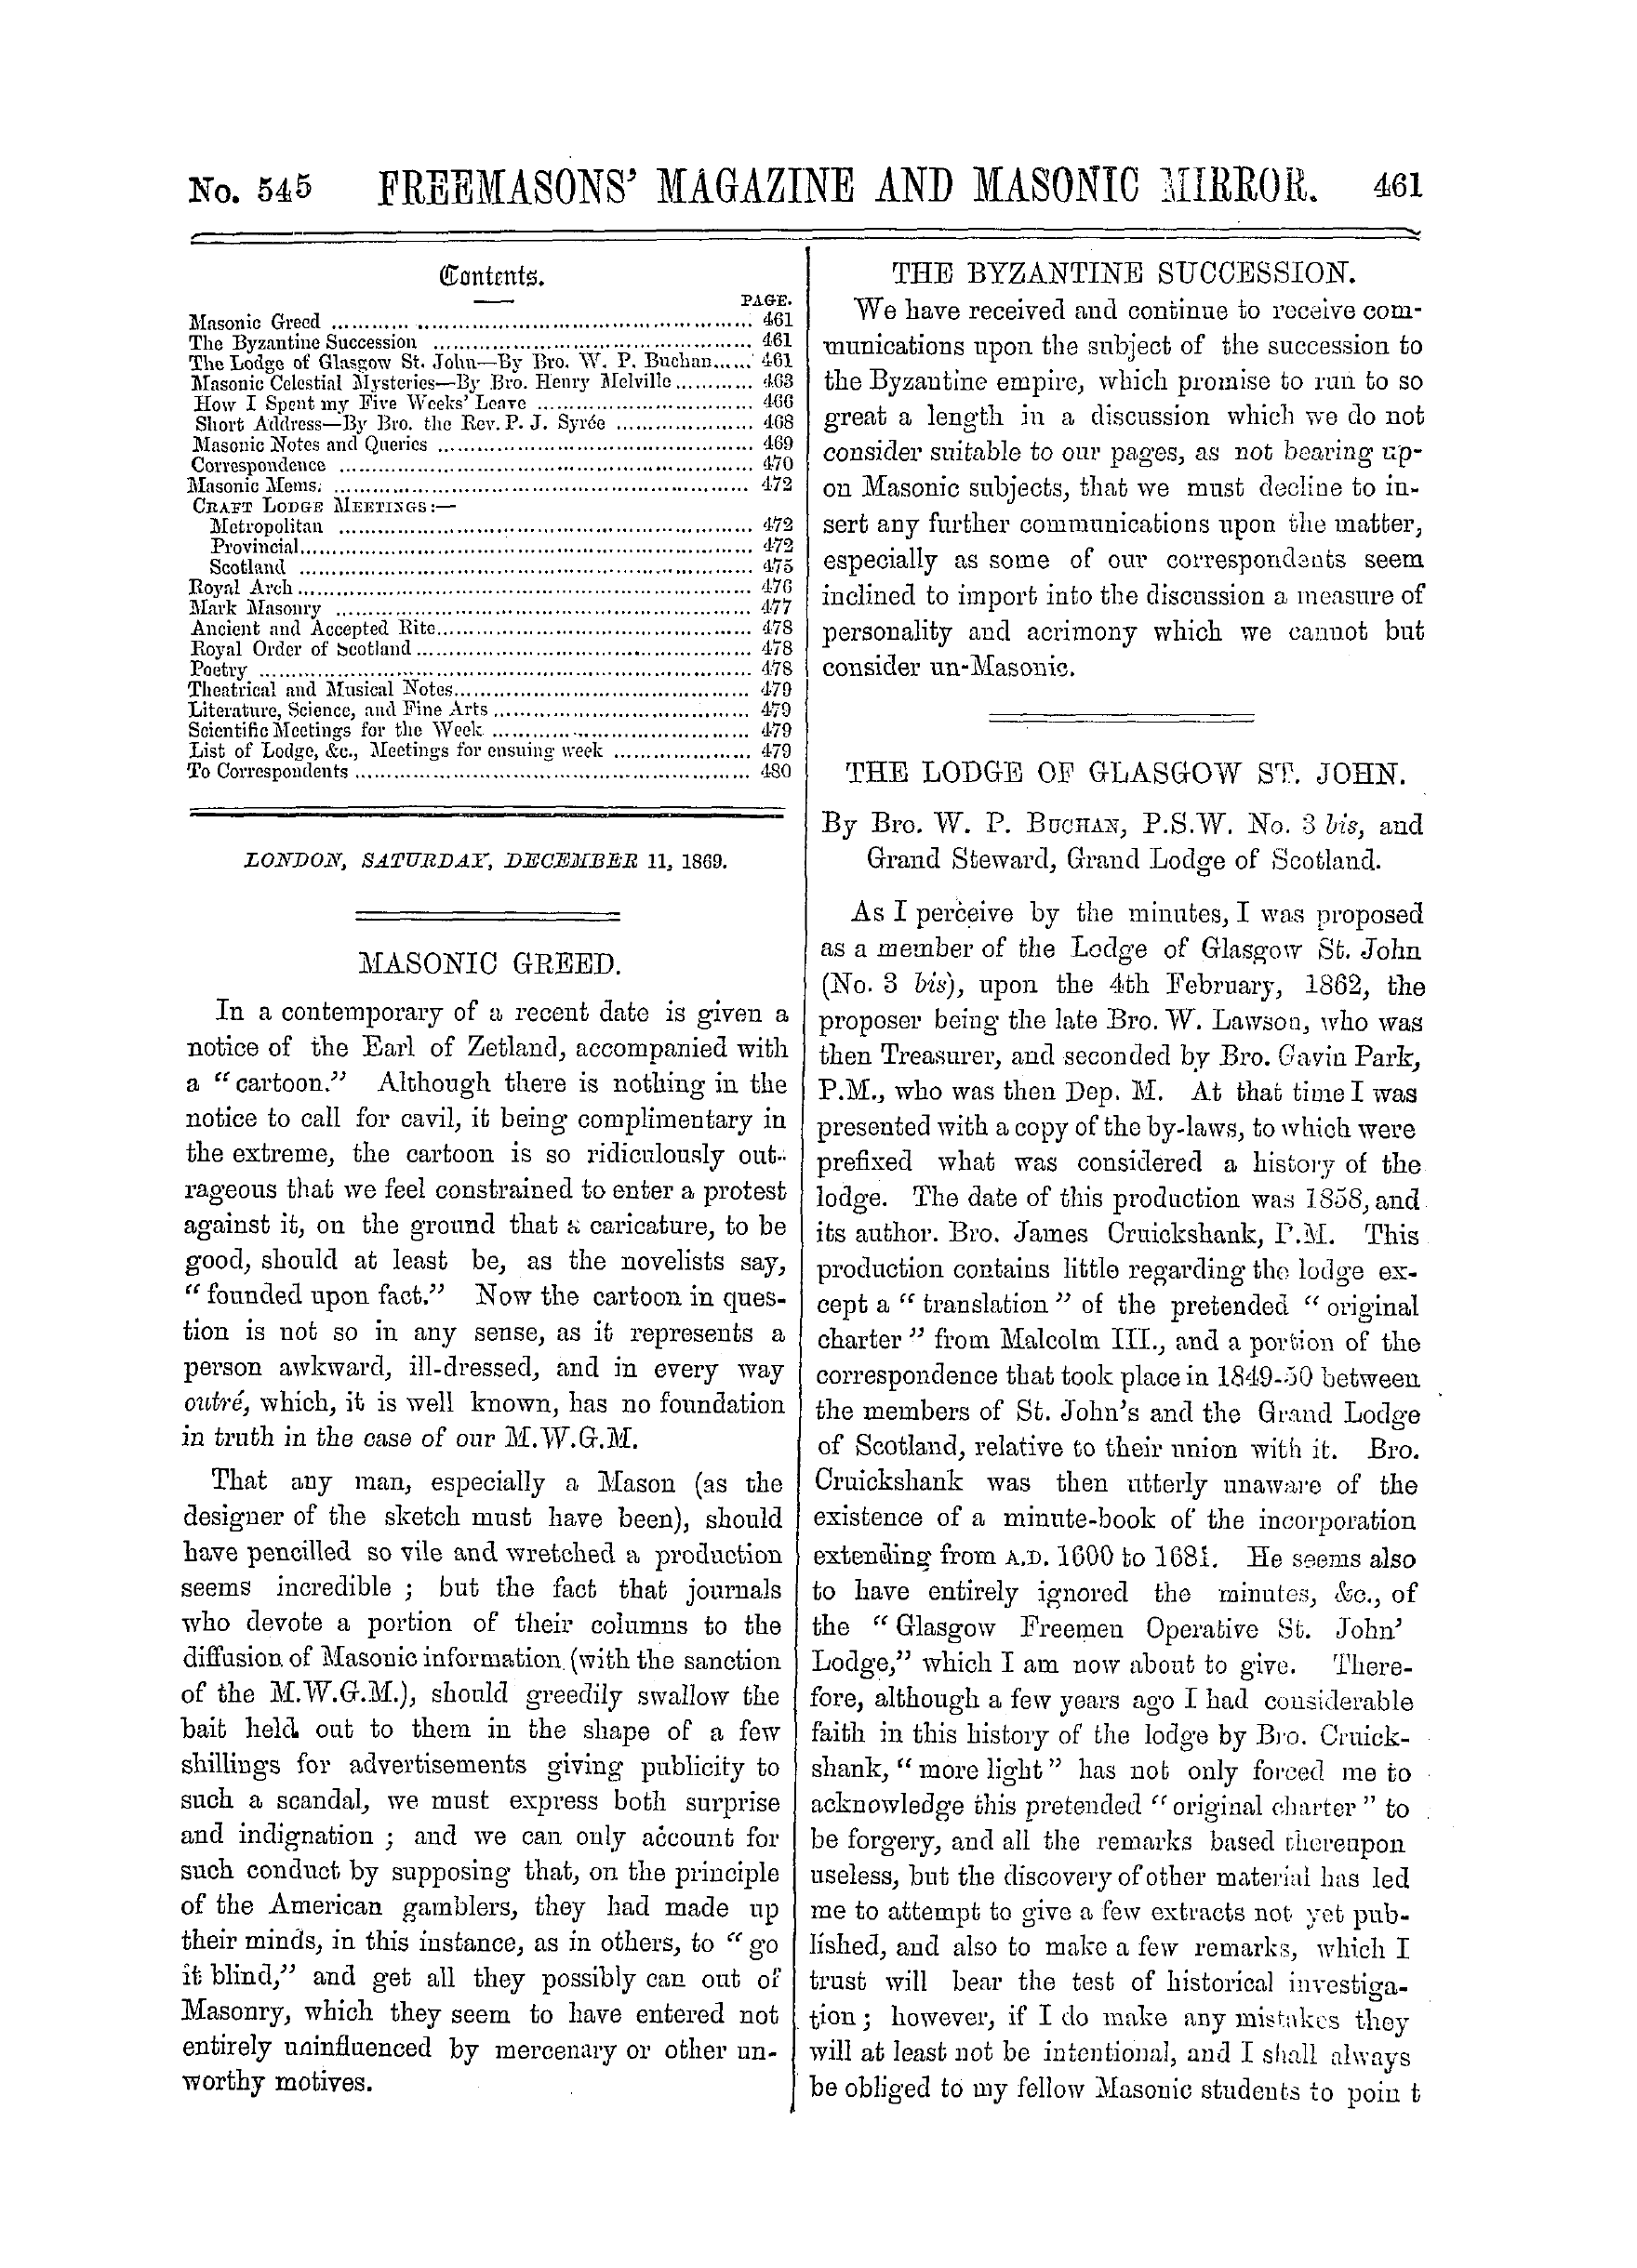 The Freemasons' Monthly Magazine: 1869-12-11 - Masonic Greed.